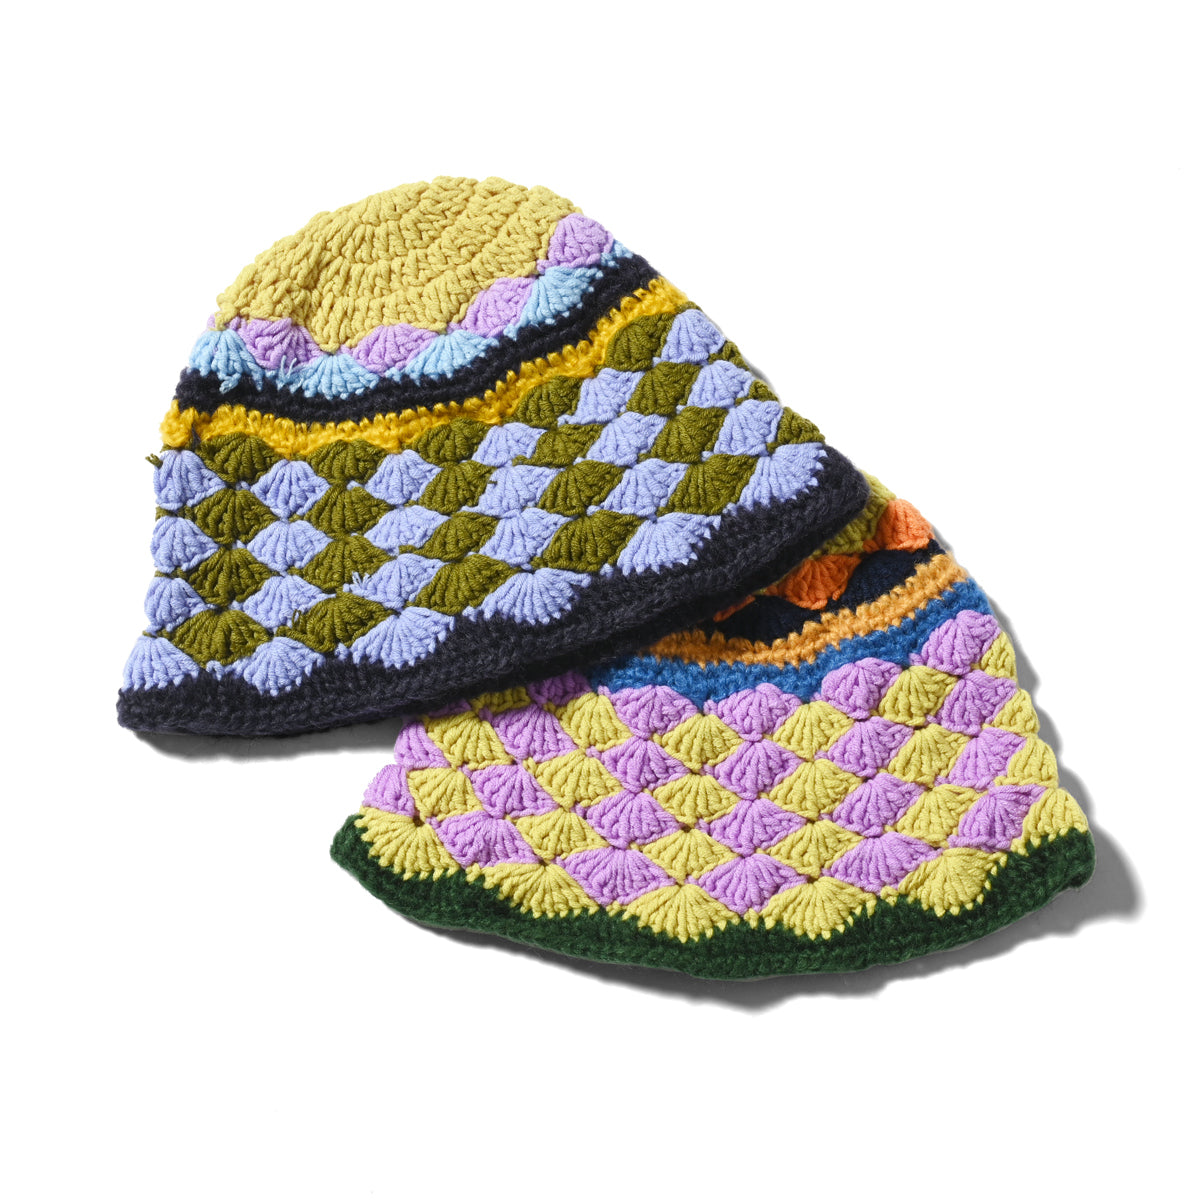 HOMEGAME - 針織帽多圖案紫色 [HG231404]